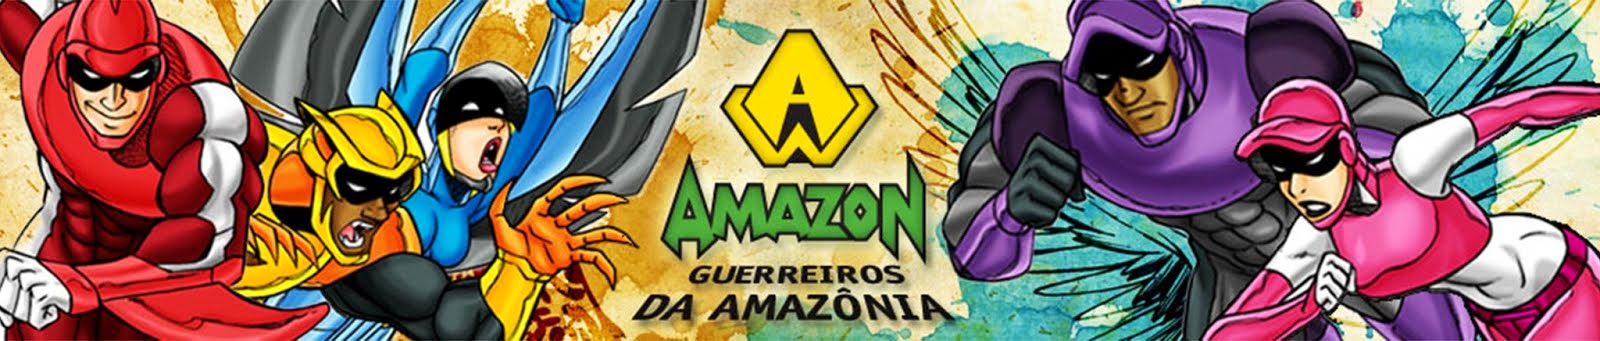 Galera Amazon - O blog dos Guerreiros Amazon